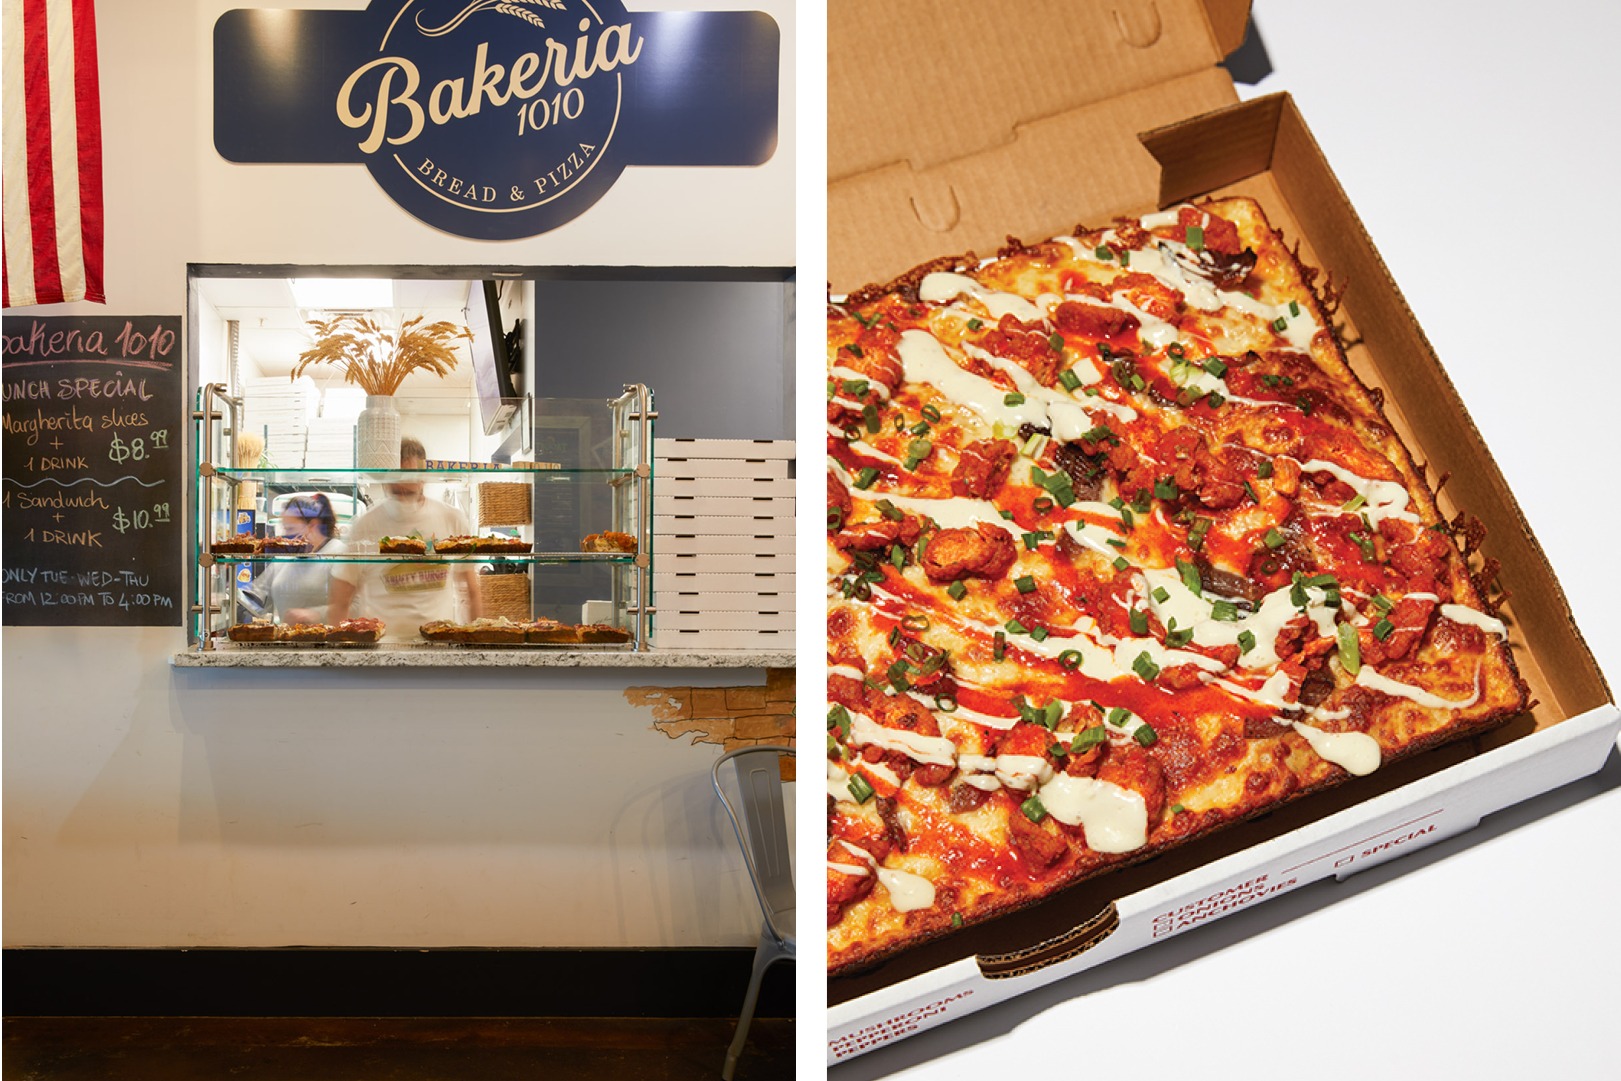 Bakeria-1010 Never Lose Your pizzeria Again